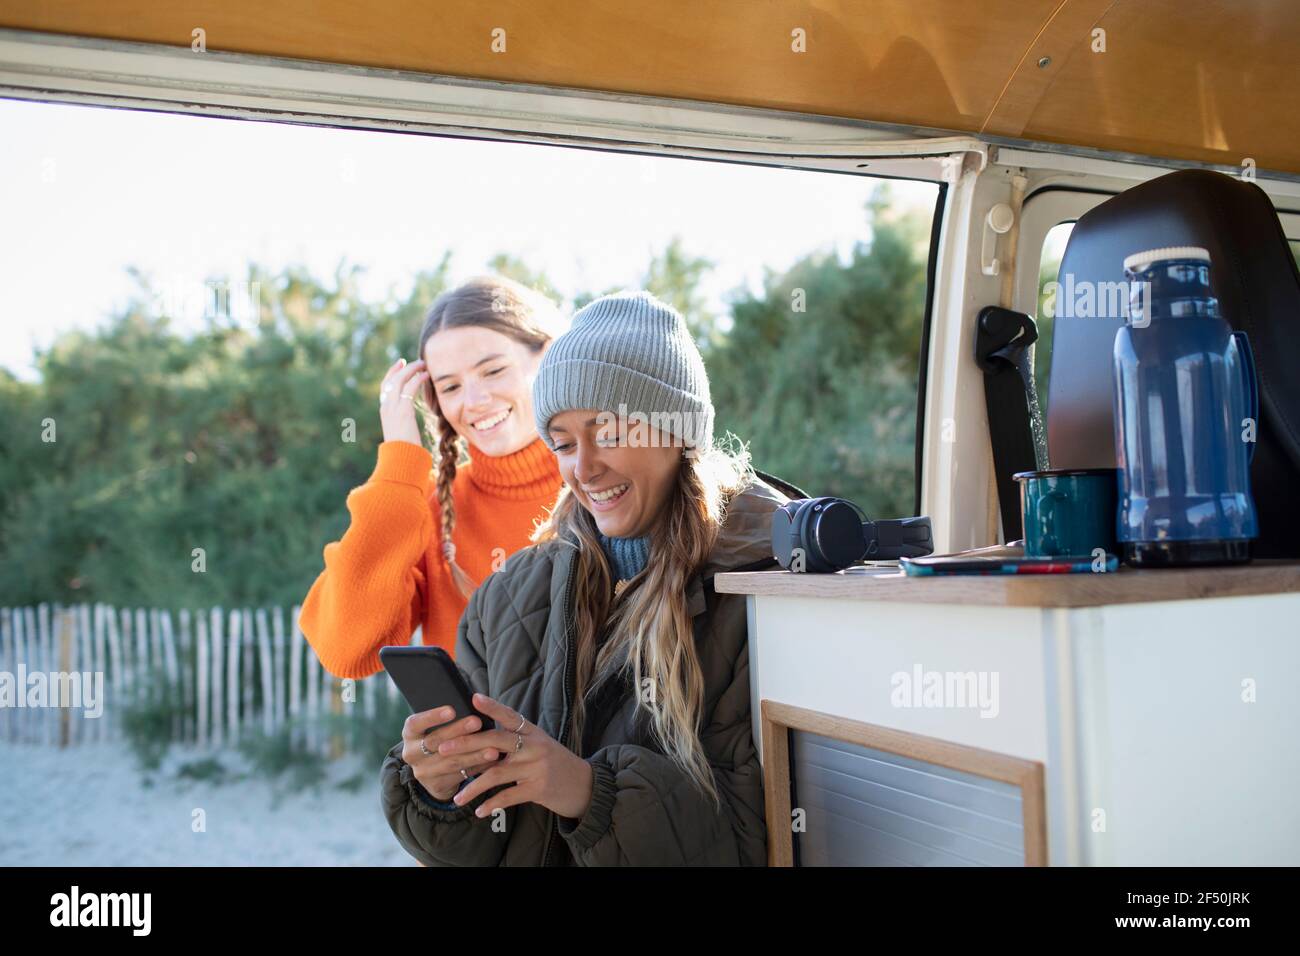 Young women friends using smart phone in camper van doorway Stock Photo